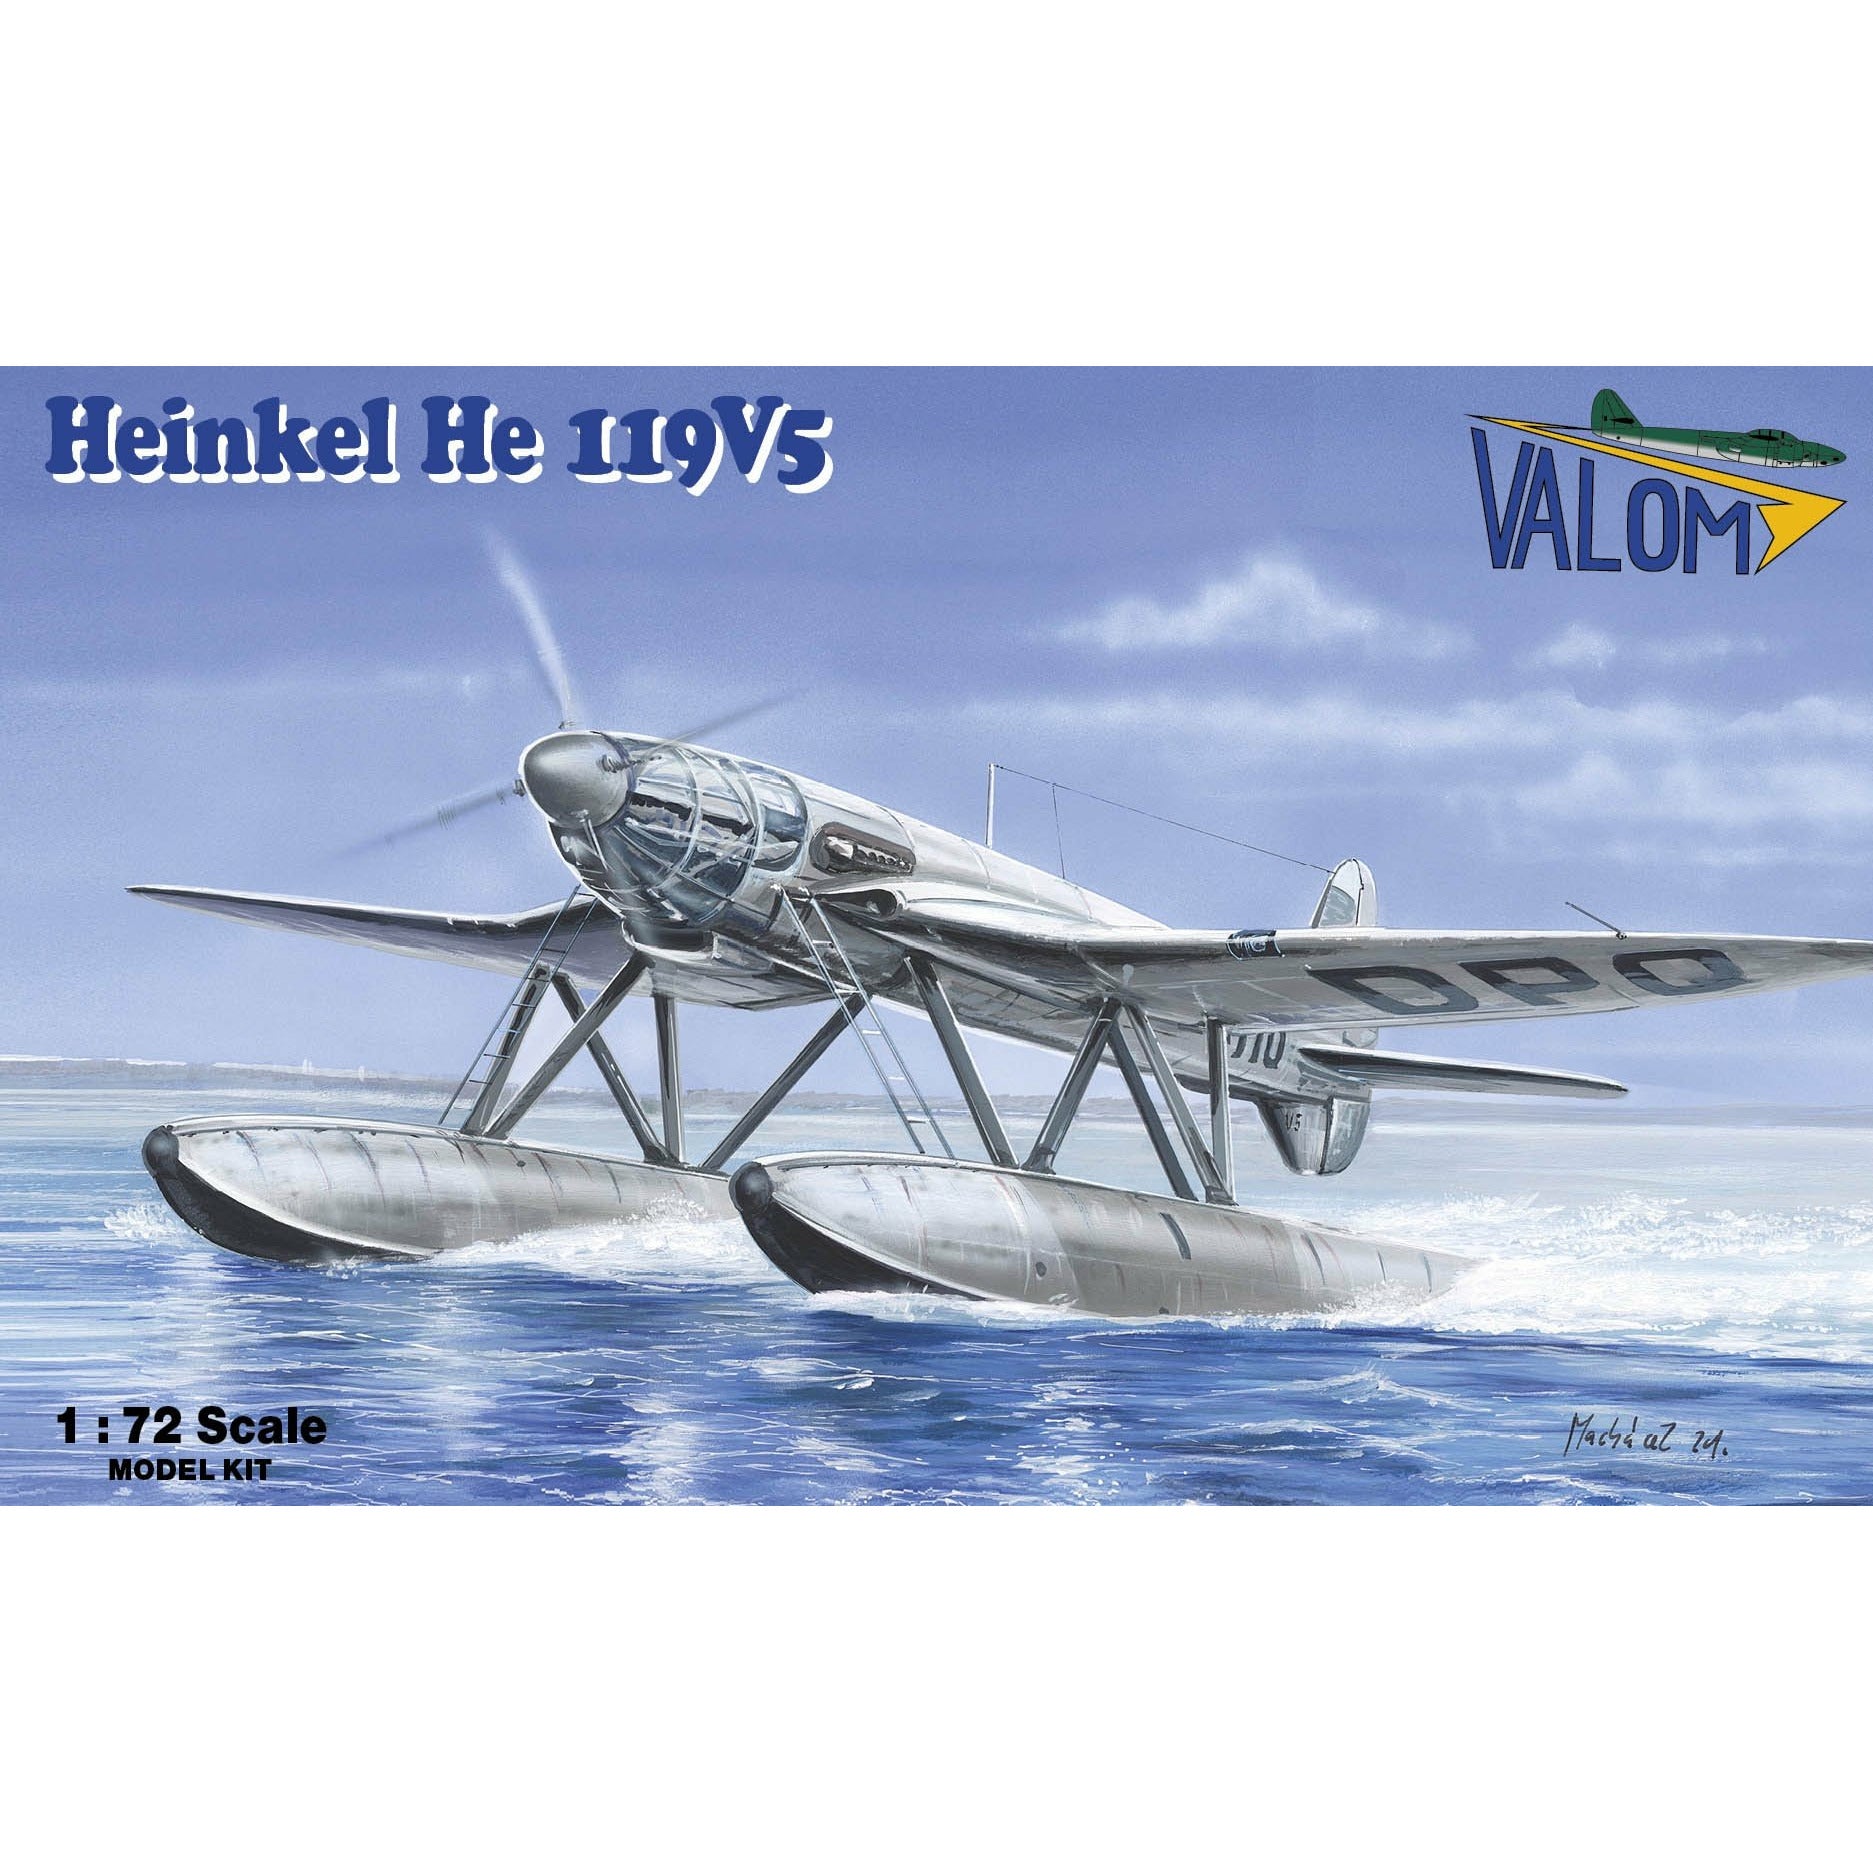 Heinkel He 119V5 1/72 #72111 by Valom